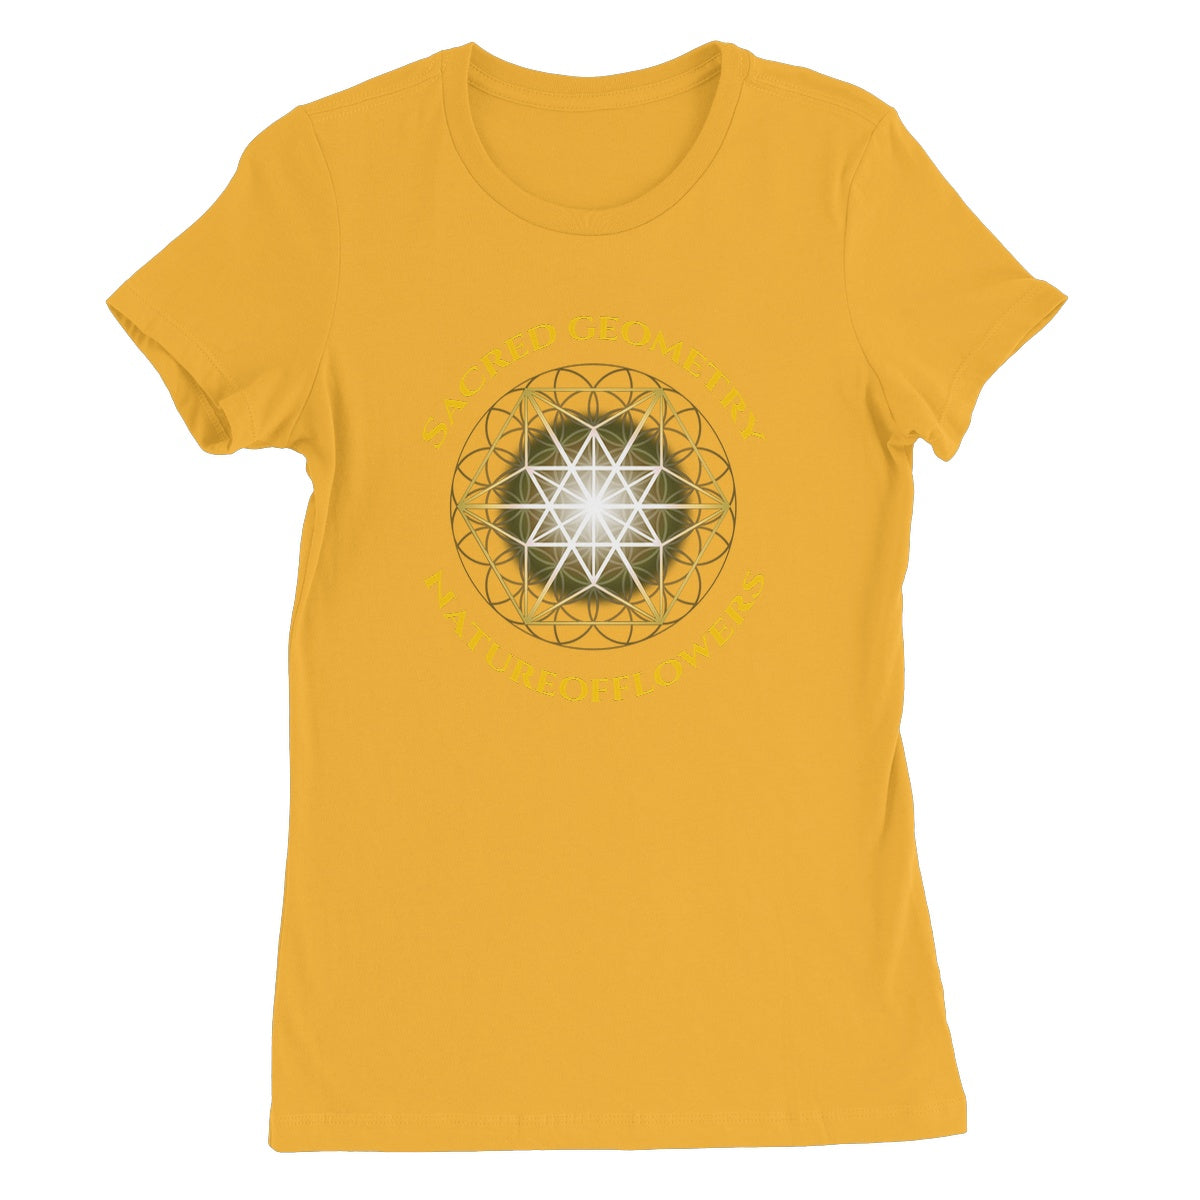 Sacred Geometry Natureofflowers Women's Favourite T-Shirt